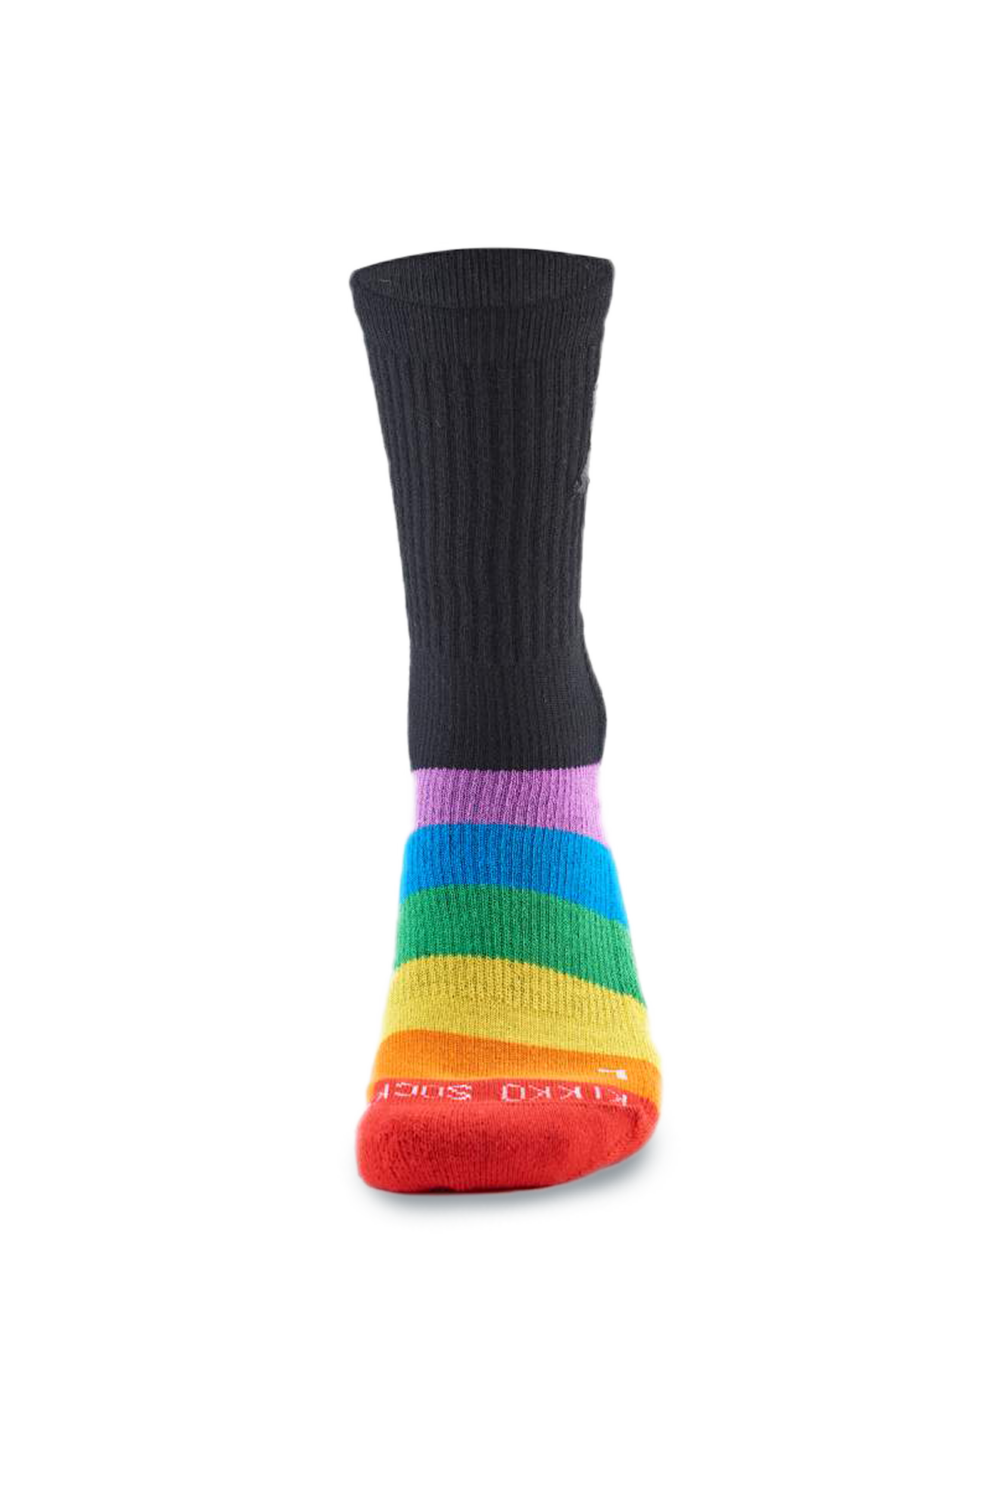 Kikko Socks Athlete Crew II (Rainbow Black)